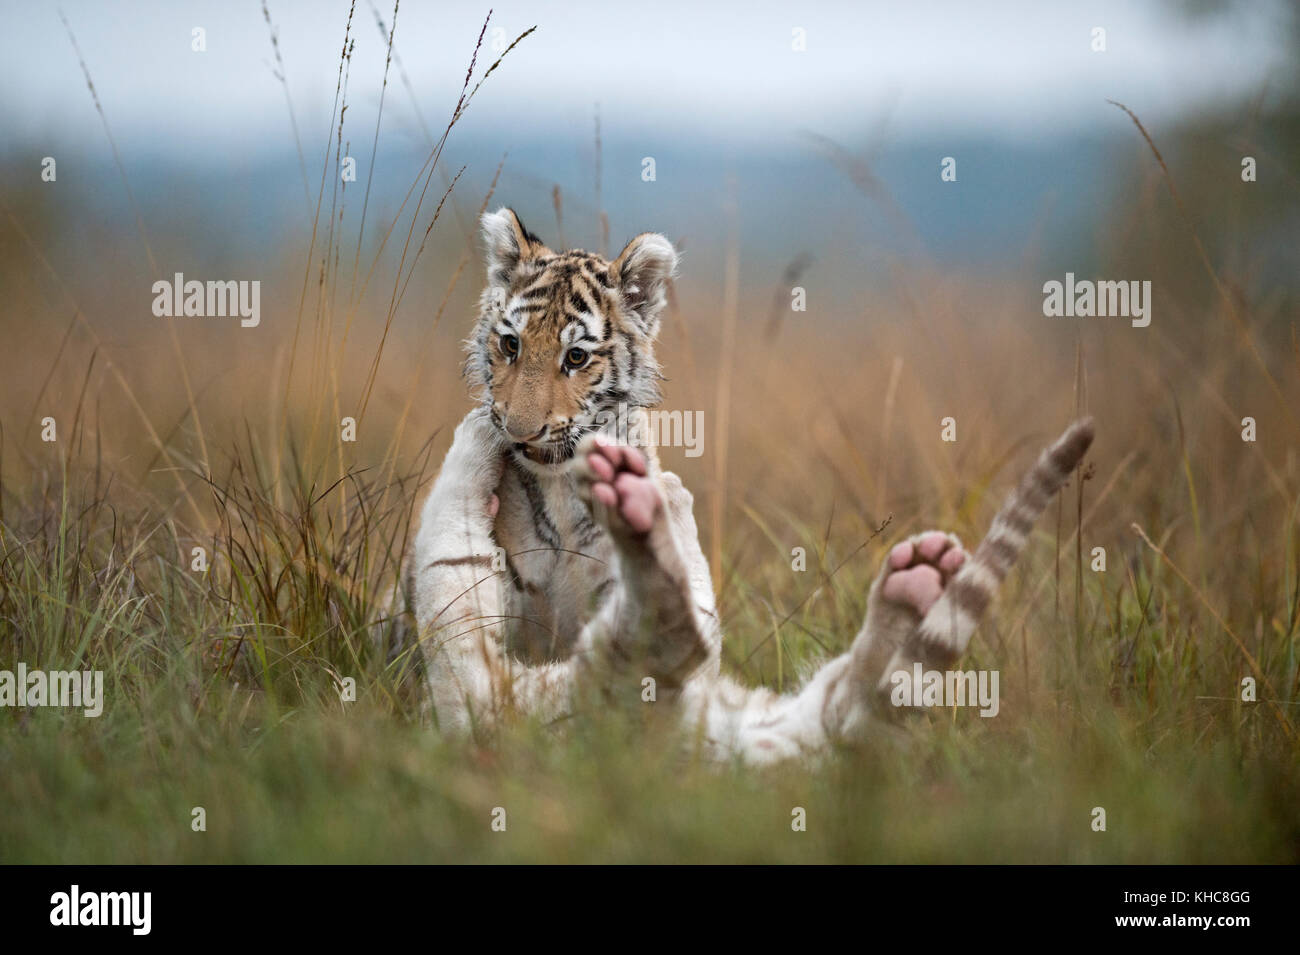 Königliche Bengal Tigers ( Panthera tigris ), junge Jungen, Geschwister, spielen, ringen, toben im hohen Gras, typische natürliche Umgebung, lustige Kätzchen. Stockfoto